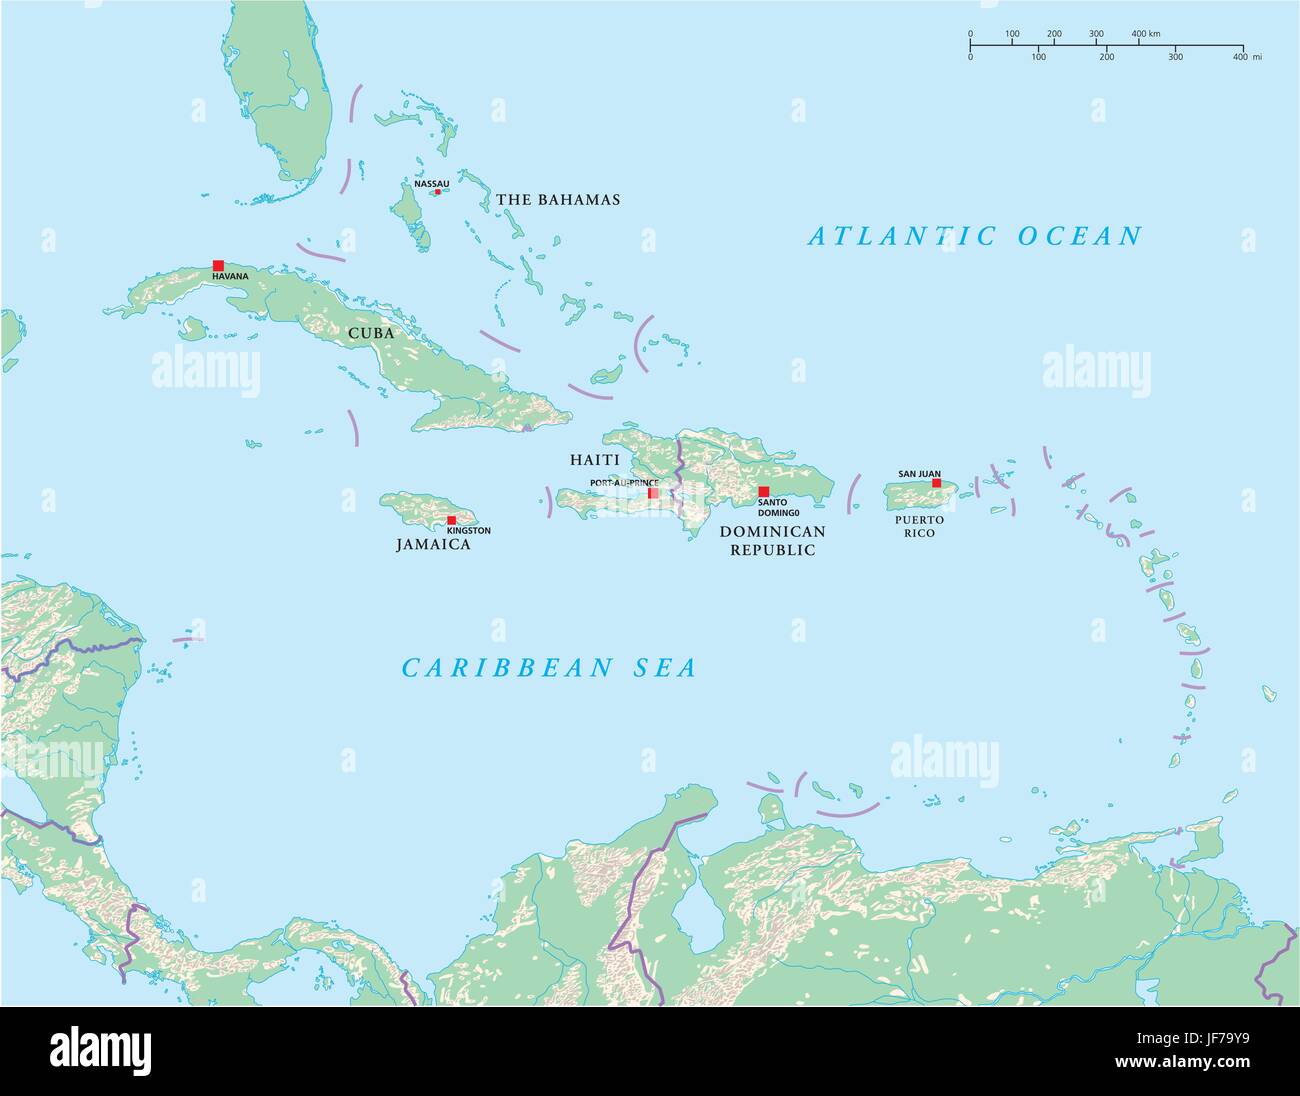 cuba, jamaica, caribbean, haiti, map, atlas, map of the world, atlantic ocean, Stock Vector